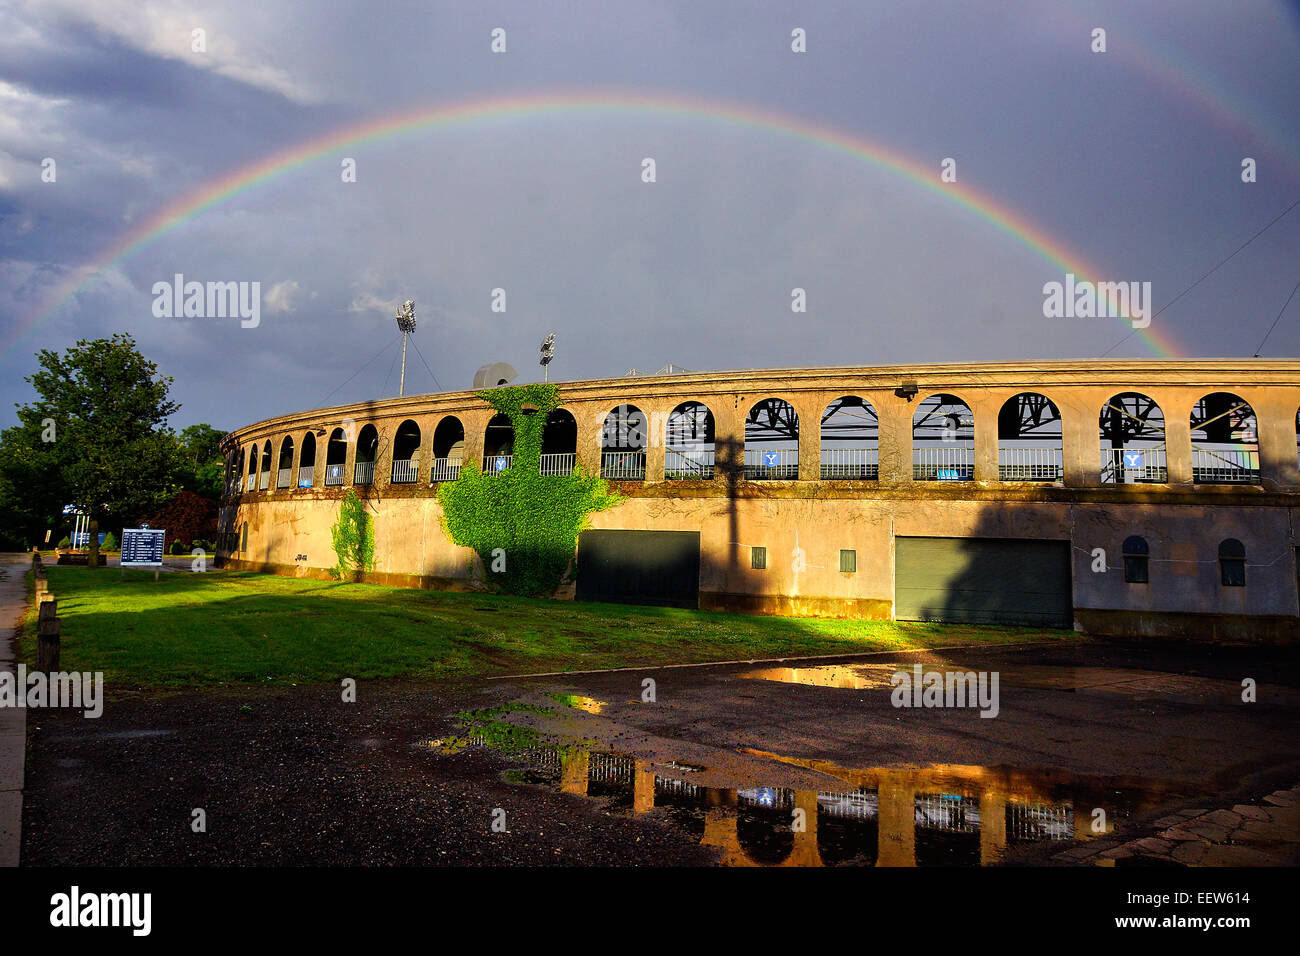 New Haven CT USA - A Regenbogen Formen über Yale Bereich Baseball-Stadion nach einer frühen Abend Dusche durchlief der Region New Haven. Stockfoto